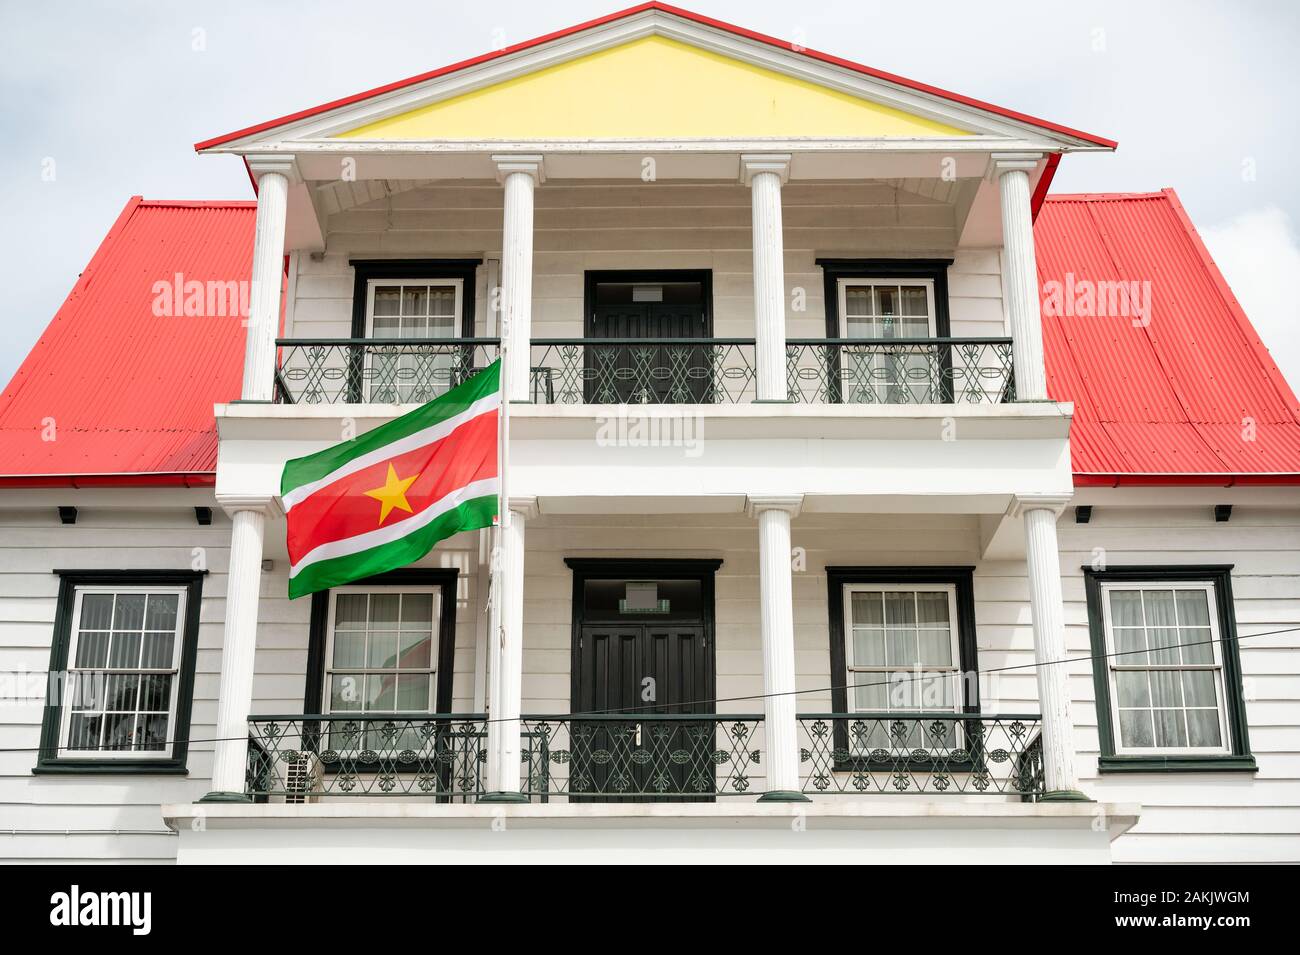 Bandera nacional de Suriname volando fuera de un edificio en Canal Street, en la ciudad capital de Paramaribo, en este pequeño país sudamericano Foto de stock